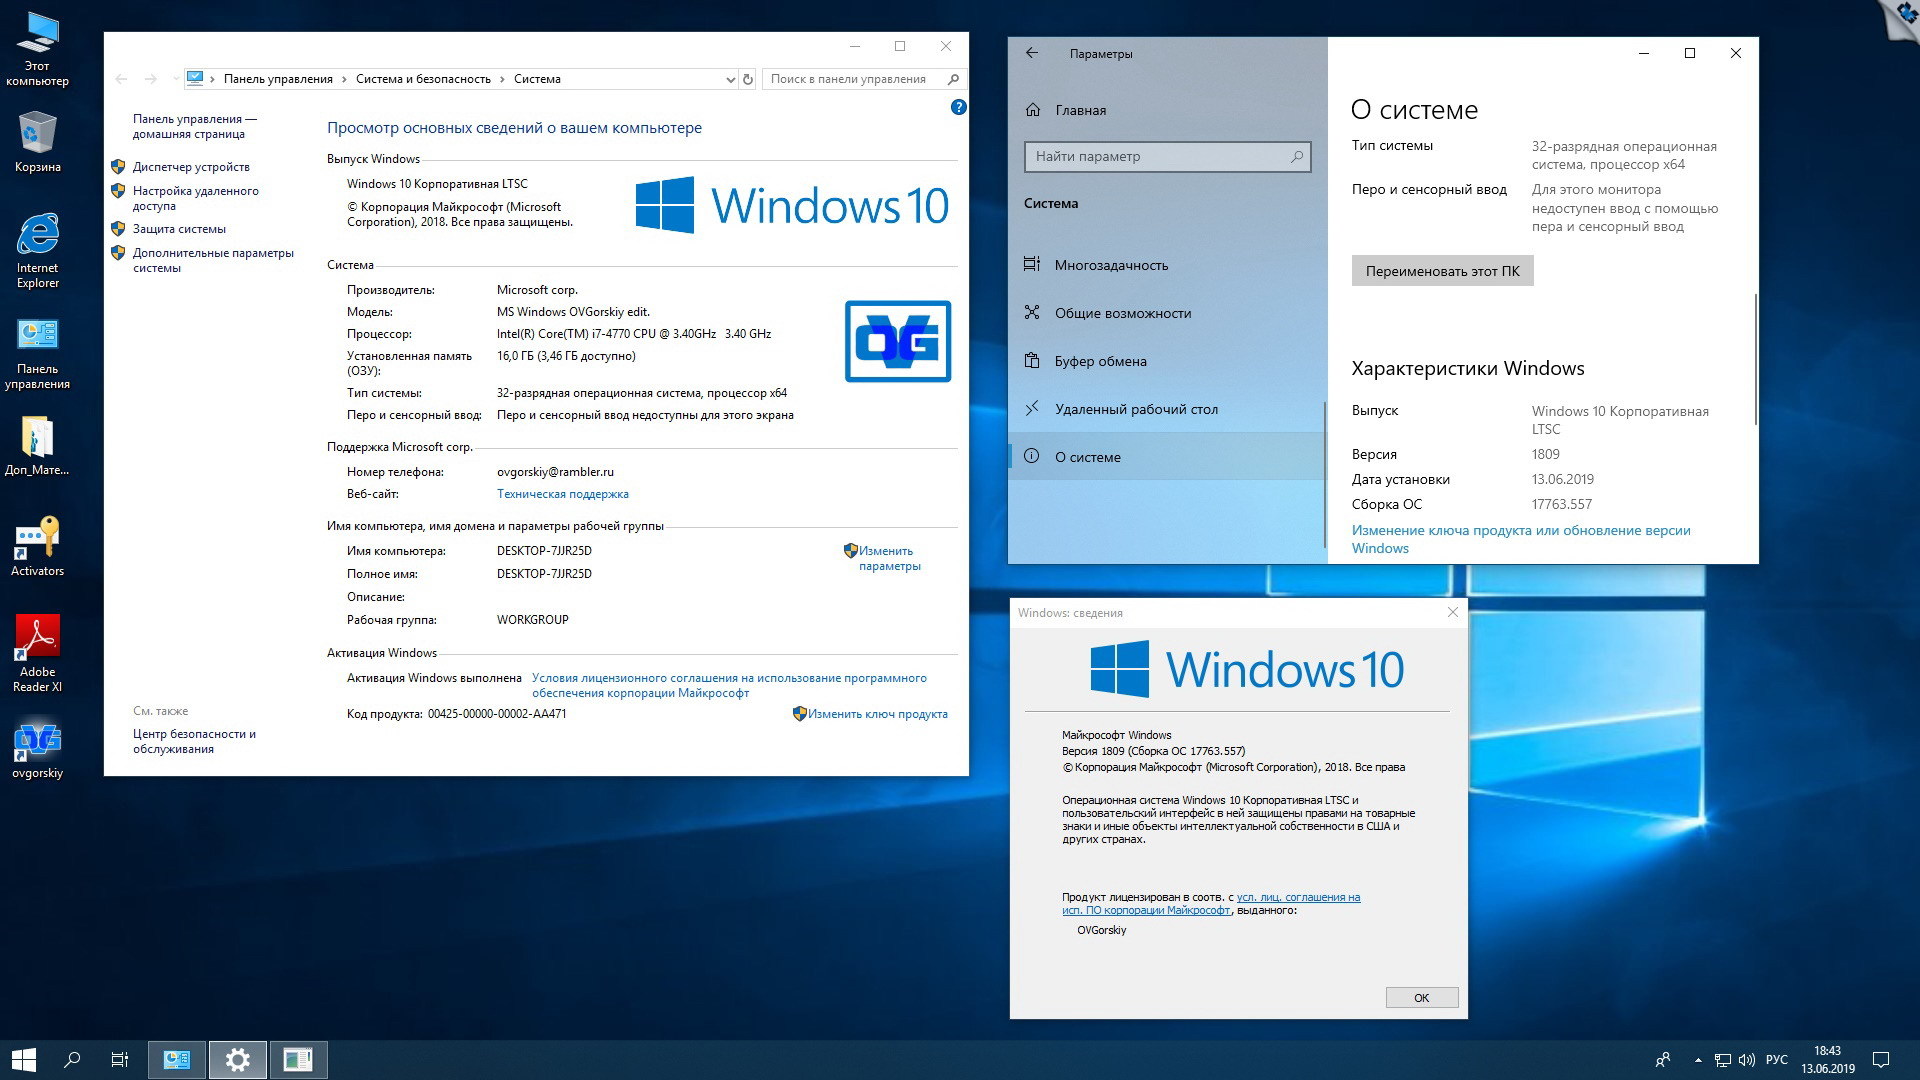 Легкая виндовс 10 64. Виндовс 10 Enterprise. Windows 10 корпоративная. Windows 10 Enterprise (корпоративная). Виндовс 10 LTSC.